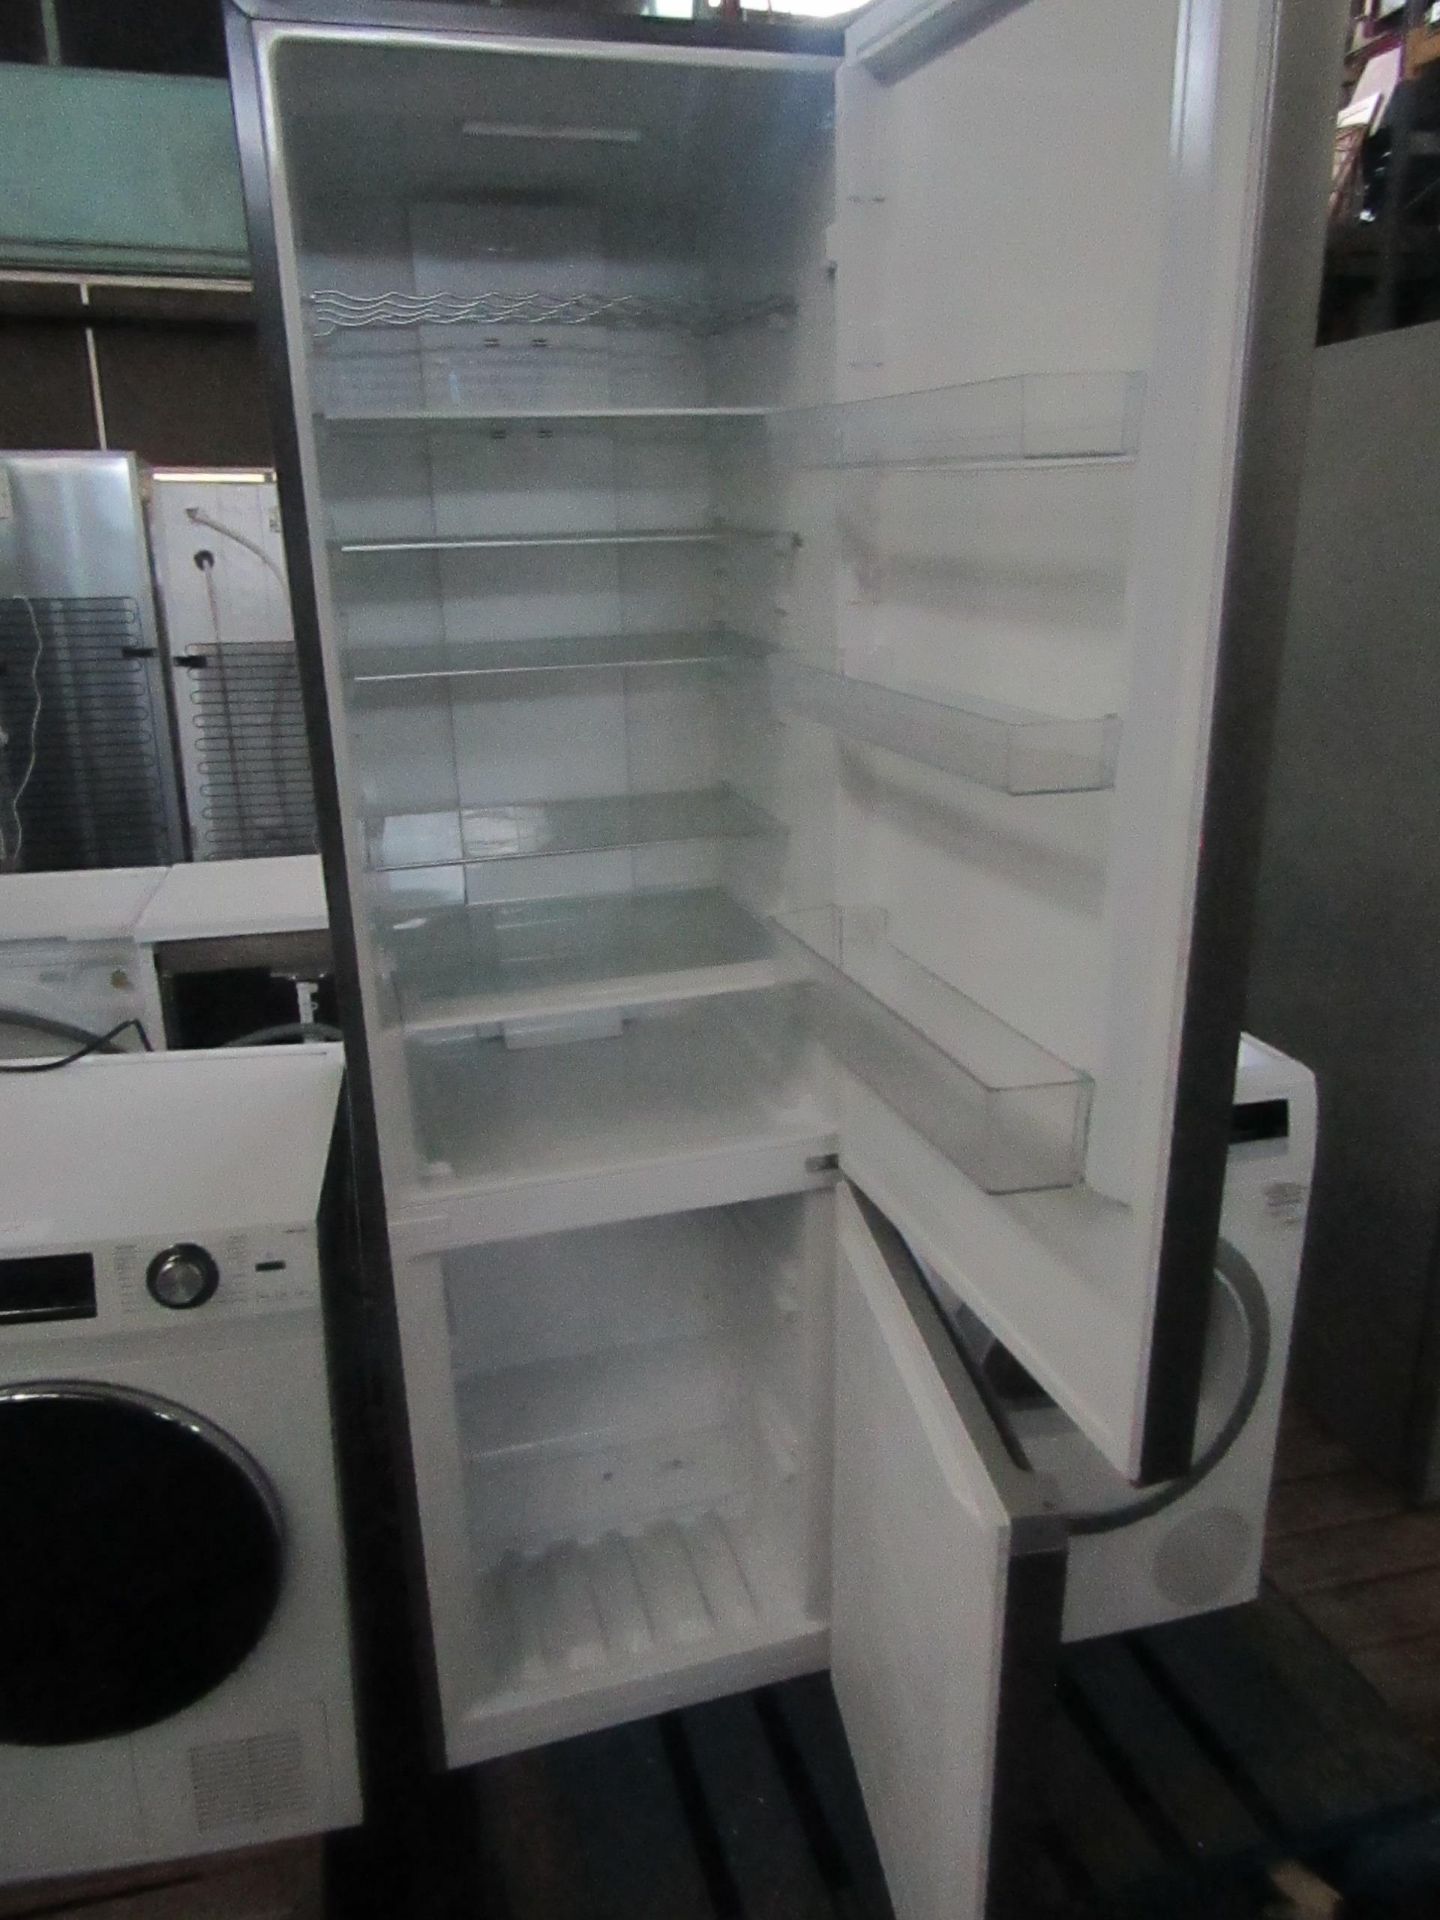 Smeg 60/40 Fridge freezer, both freezer and fridge are working but the fridge is missing the - Image 2 of 2